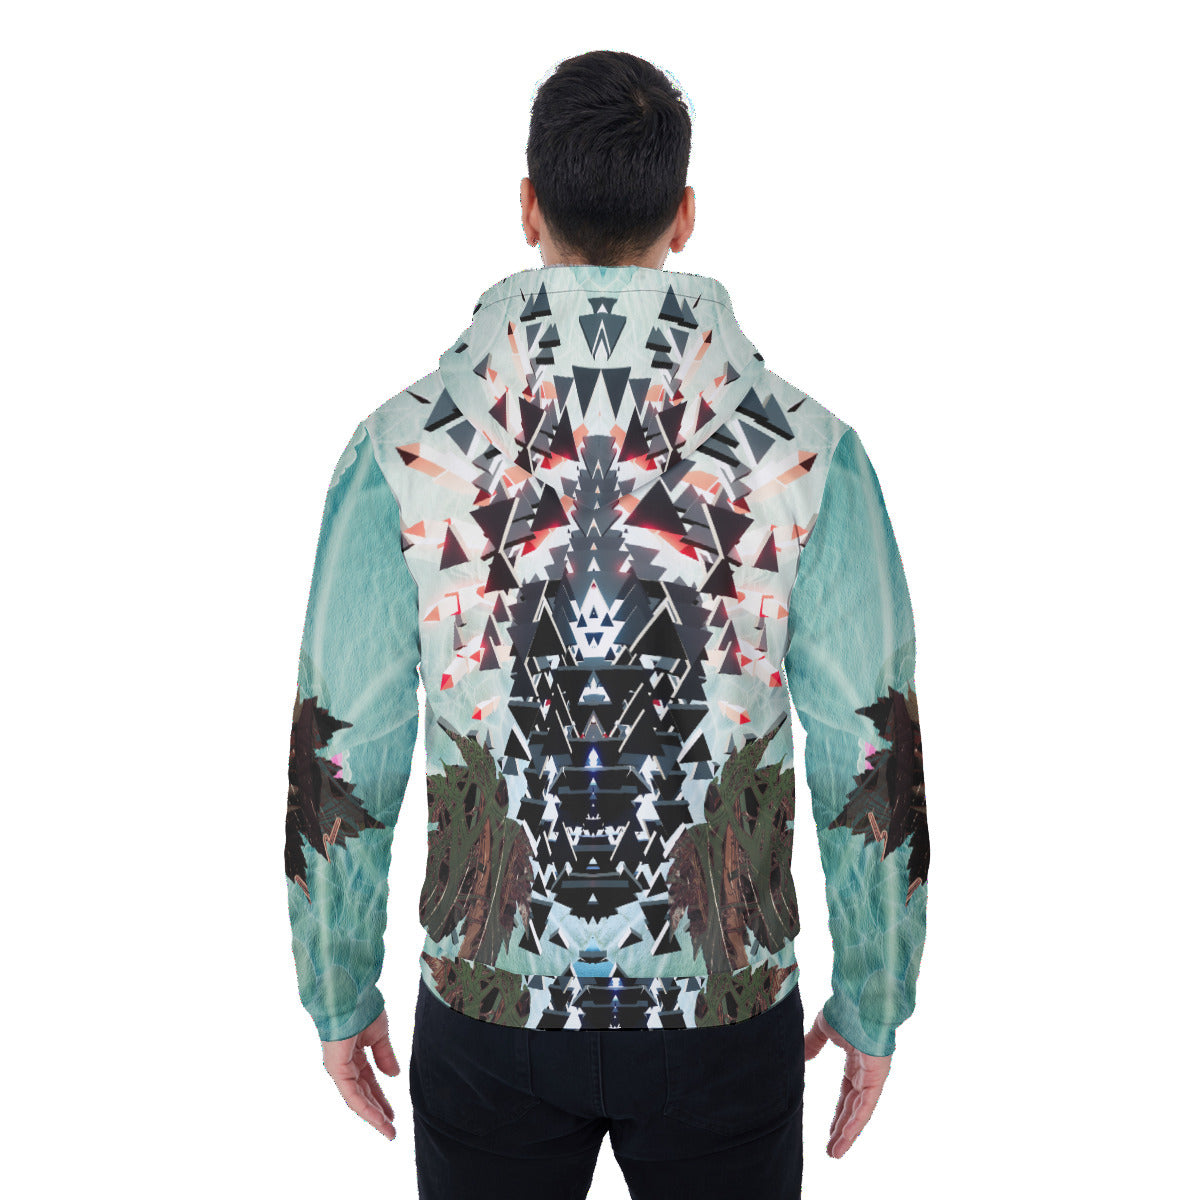 Psychedelic Digital Art Print Men's Sherpa Fleece Zip Up Hoodie